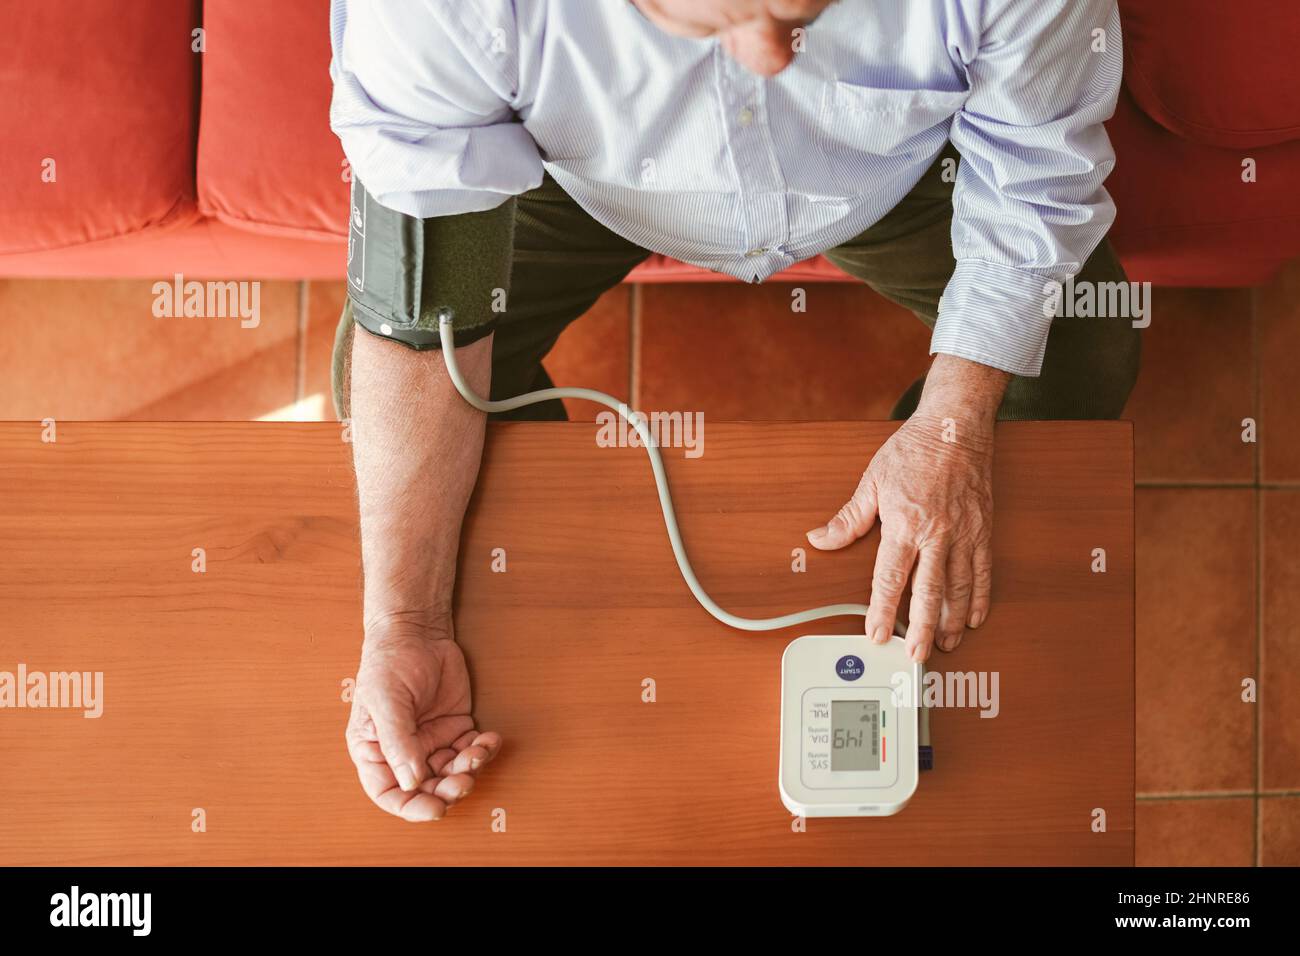 zenithal shot of an older man taking his blood pressure Stock Photo